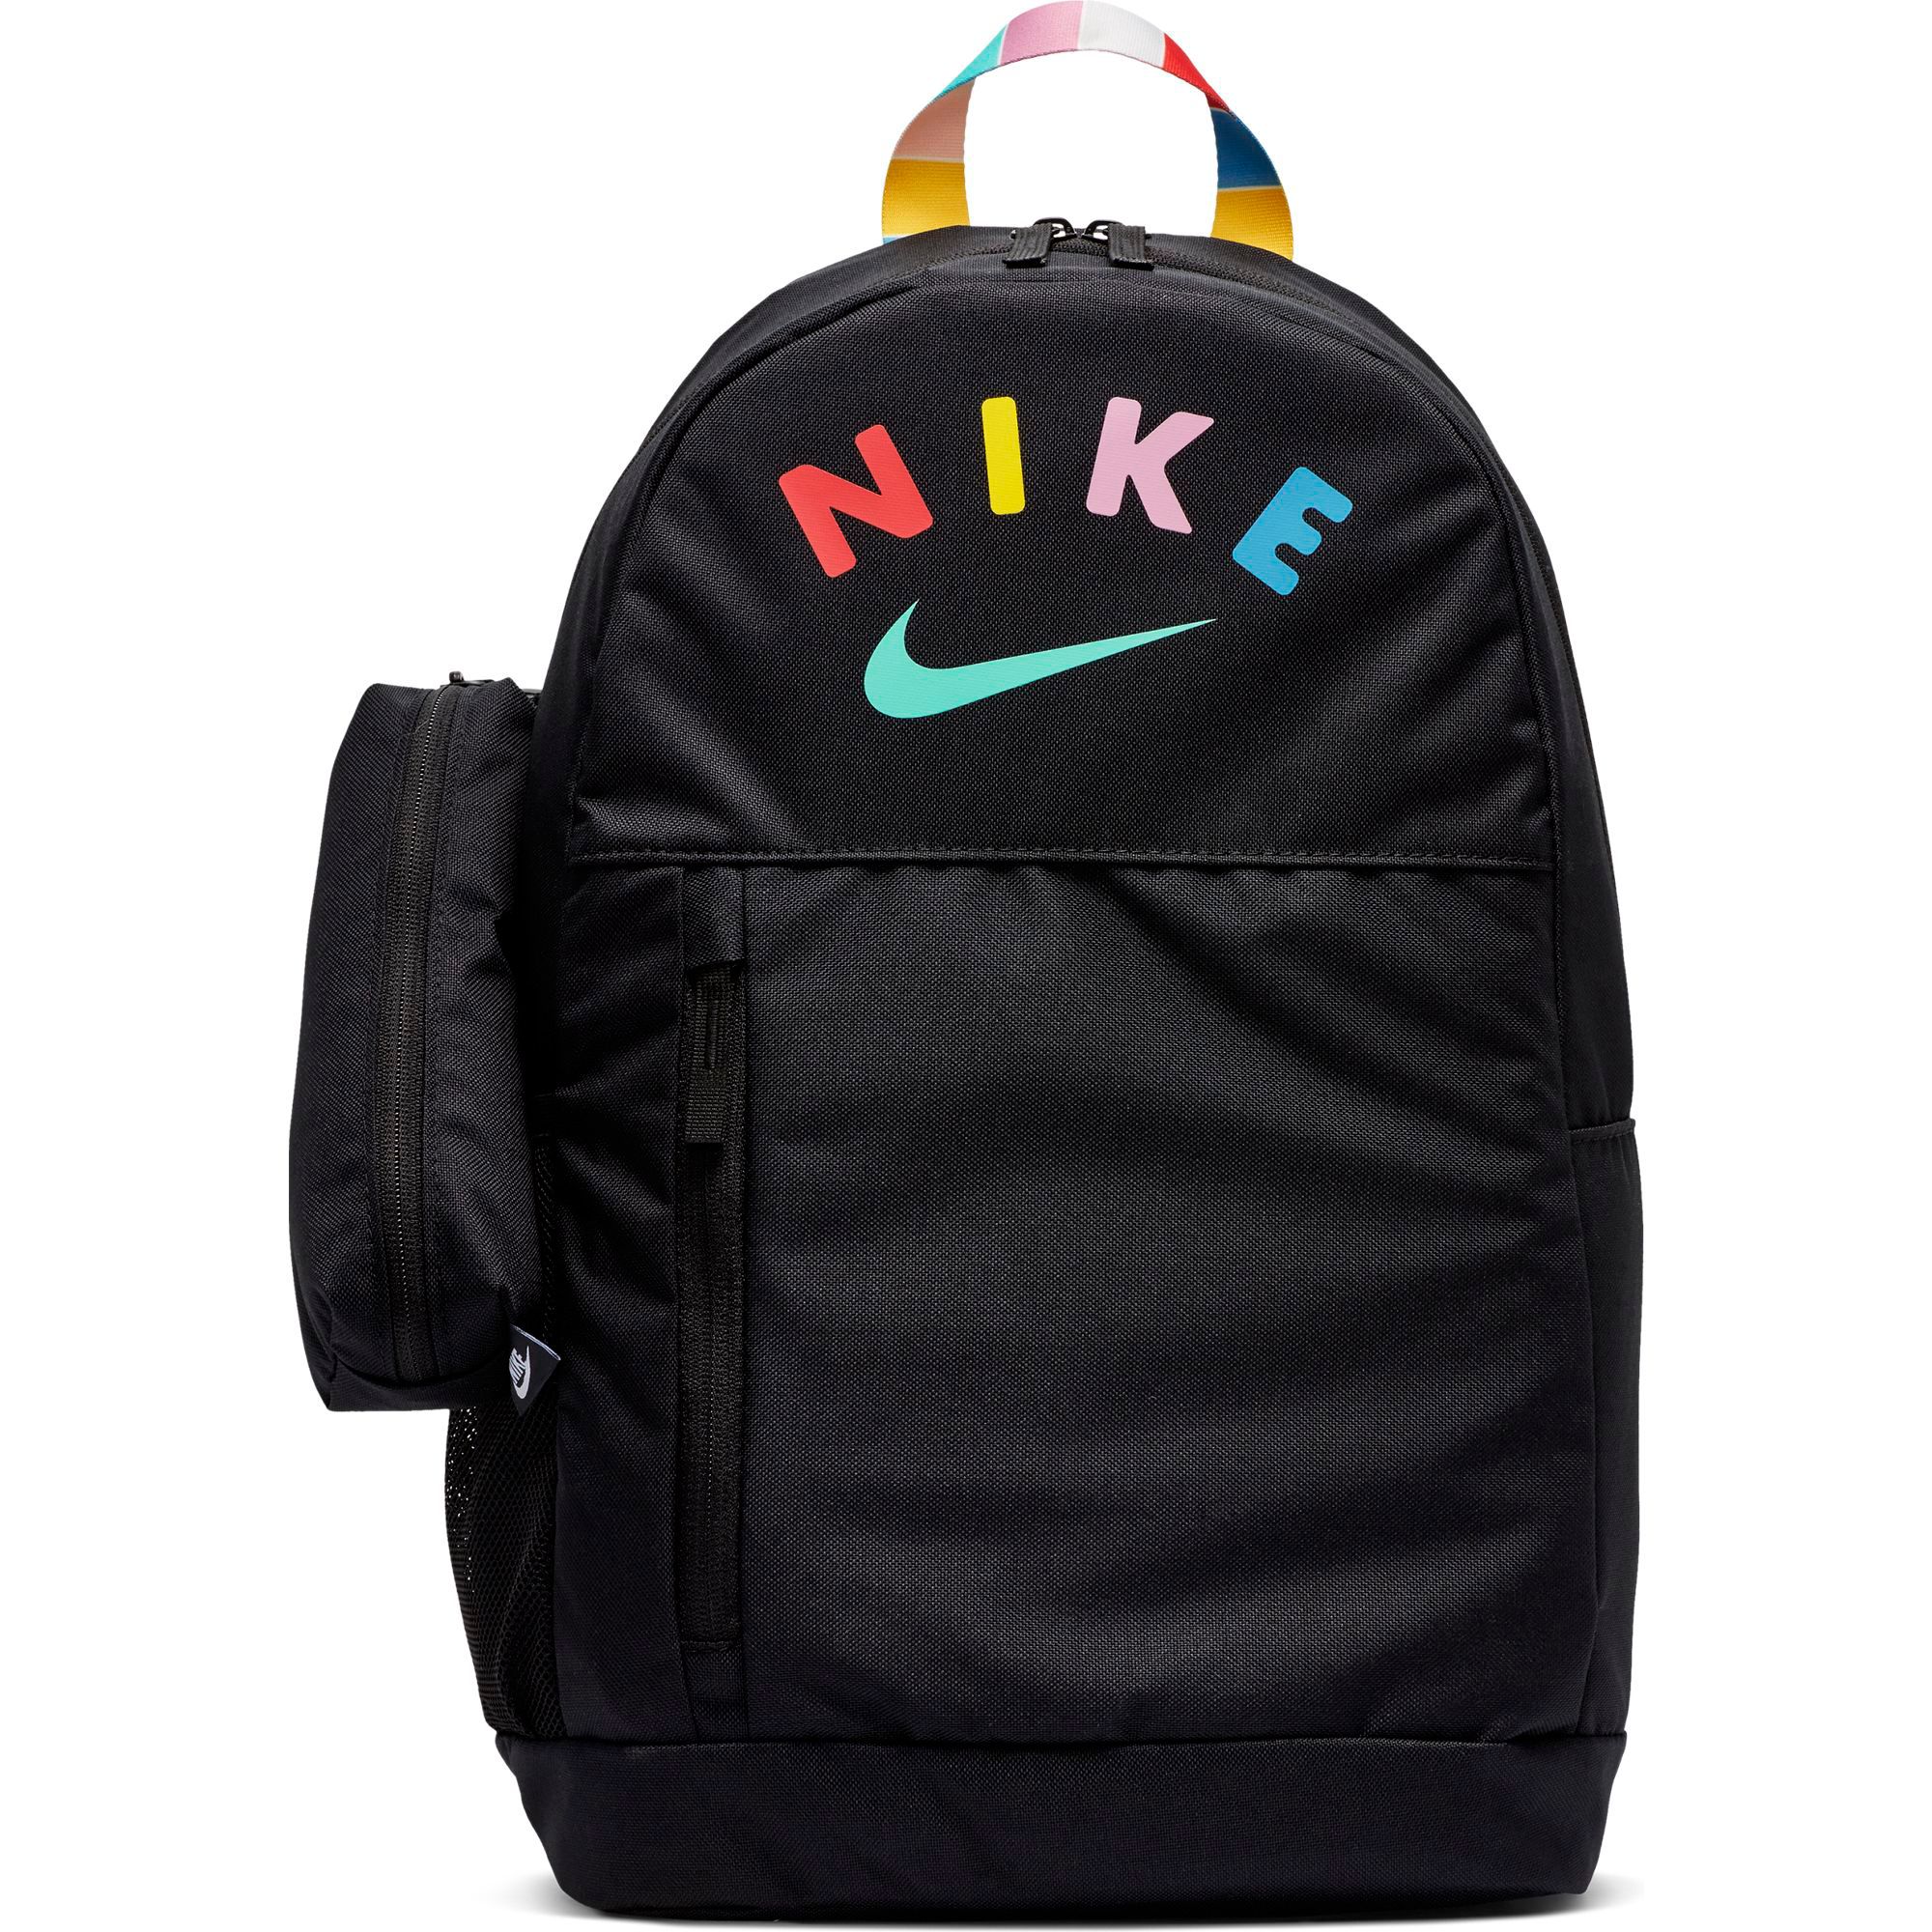 nike backpacks for teenage girls